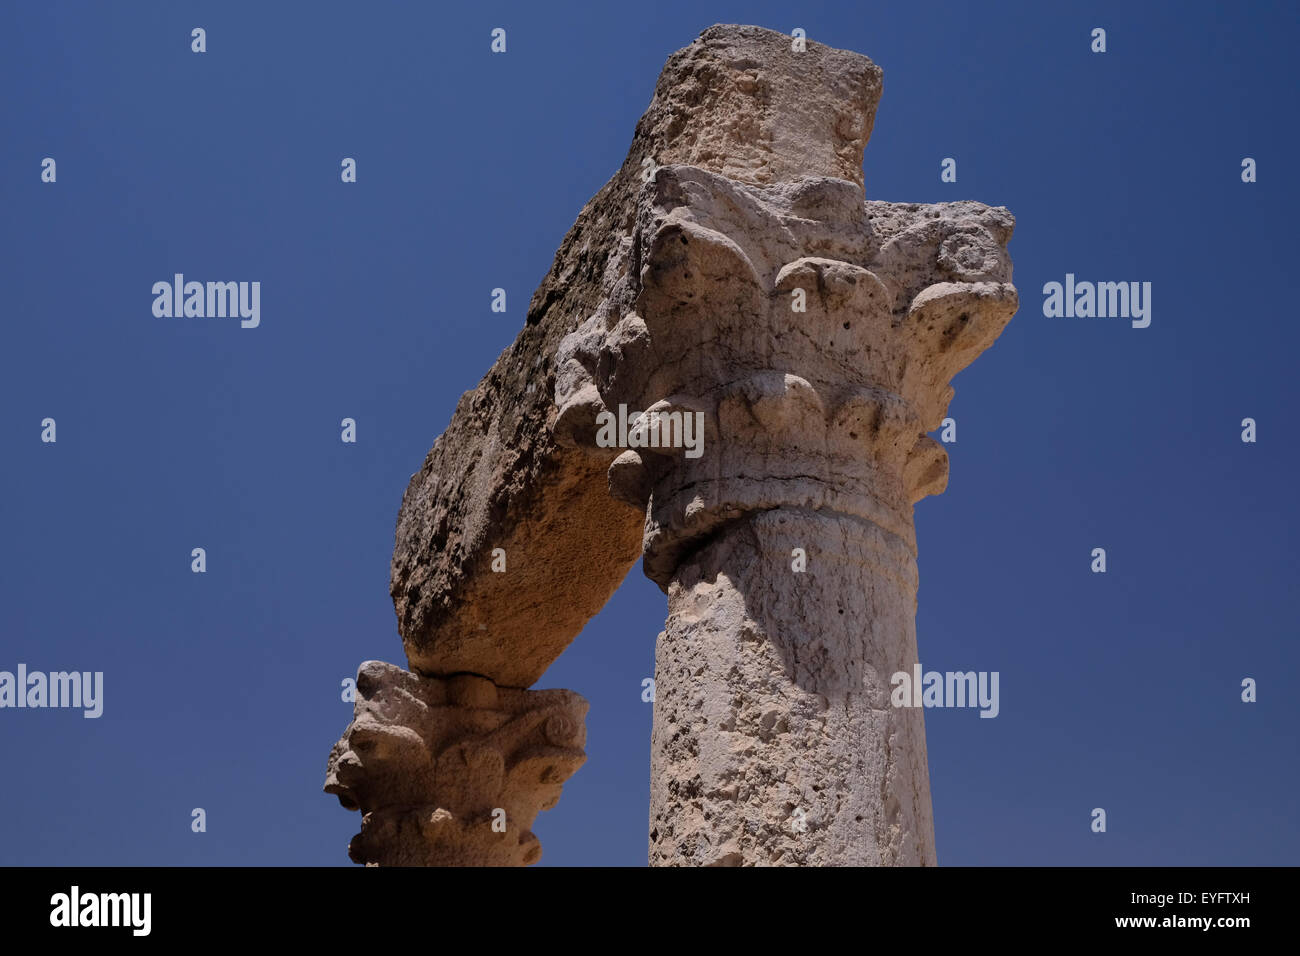 Colonne con riccamente intagliati da capitale Roman-Byzantine era 5th-8secolo CE in Susya o Susiya sito archeologico a sud delle colline di Hebron Israele Foto Stock